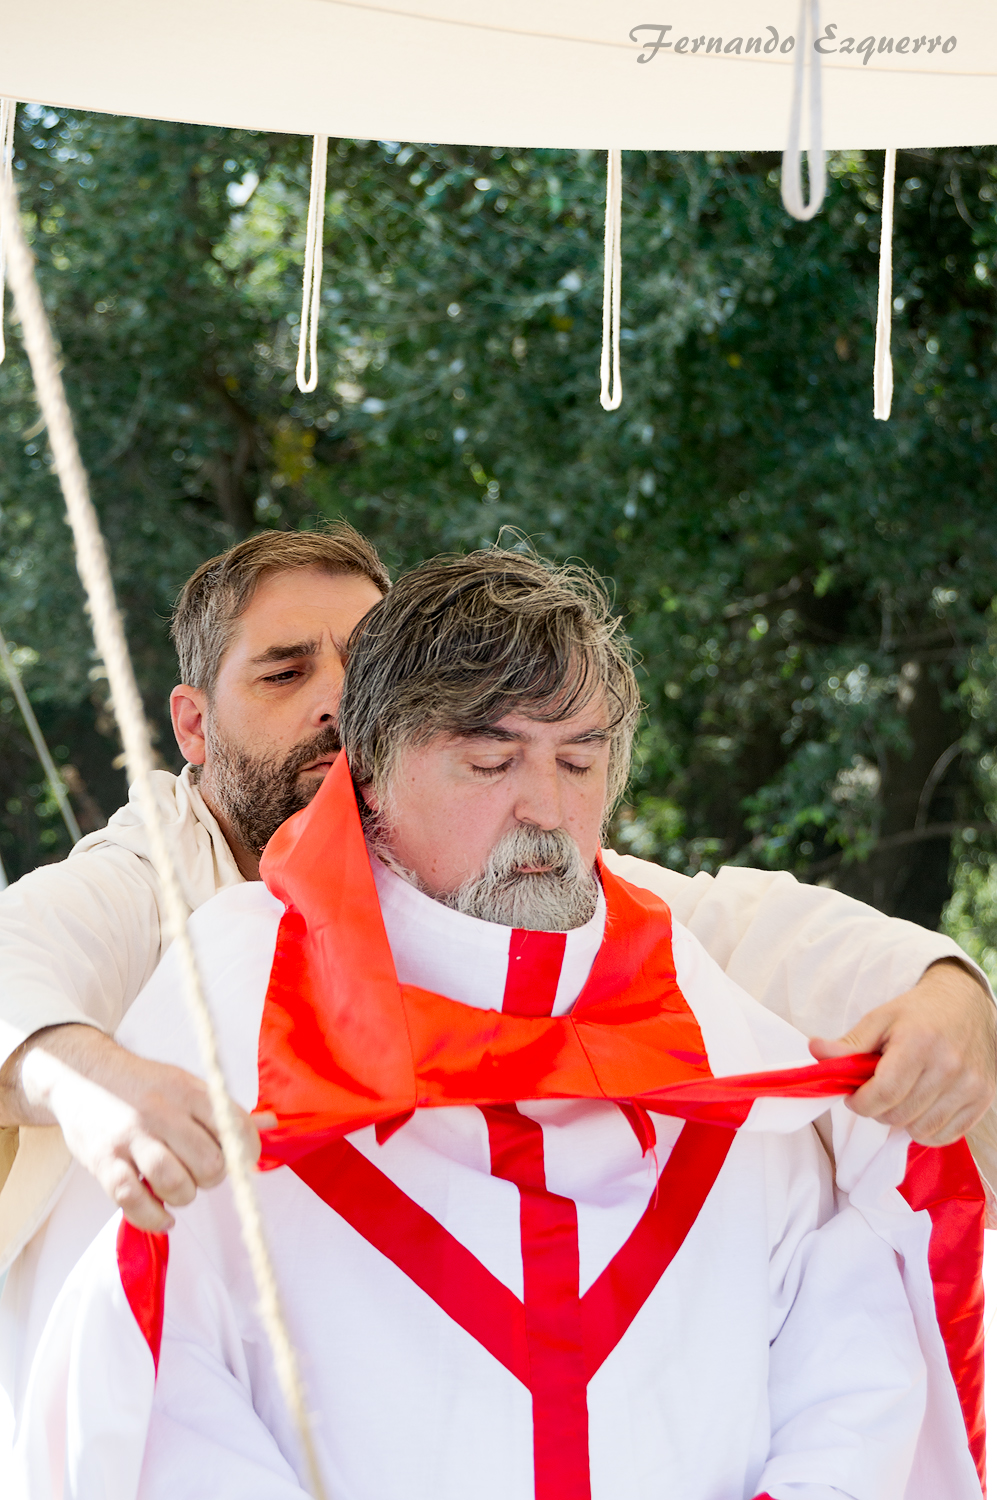 Ceremonia del bautizo del primigénito de un señor que parte a la guerra